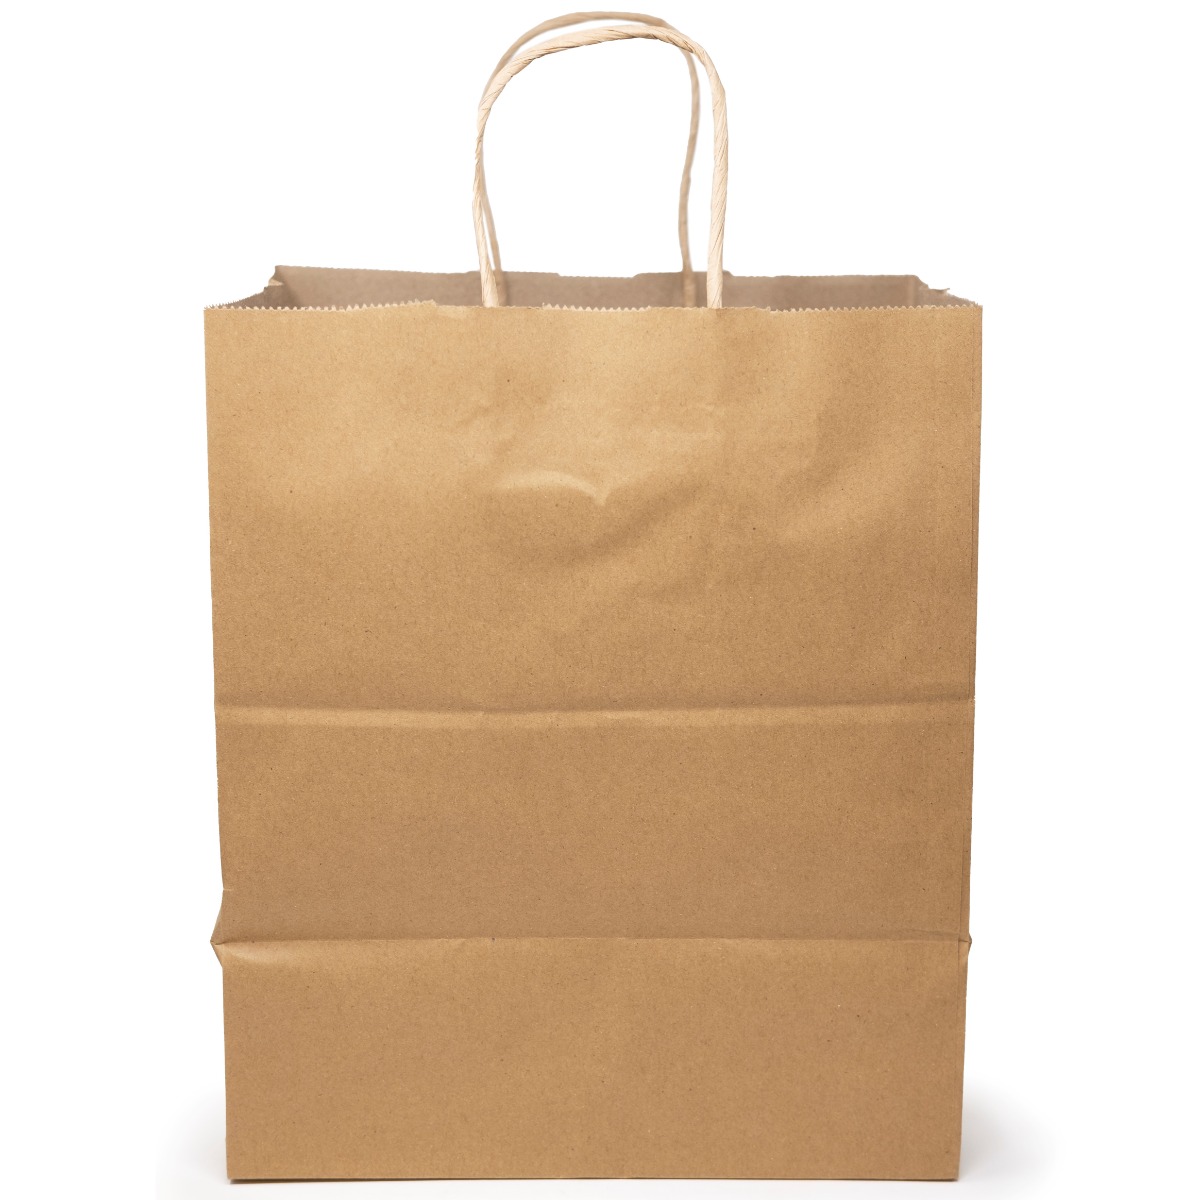 Food Storage Bags With Twist Ties 3 Pack 225 Bags Total